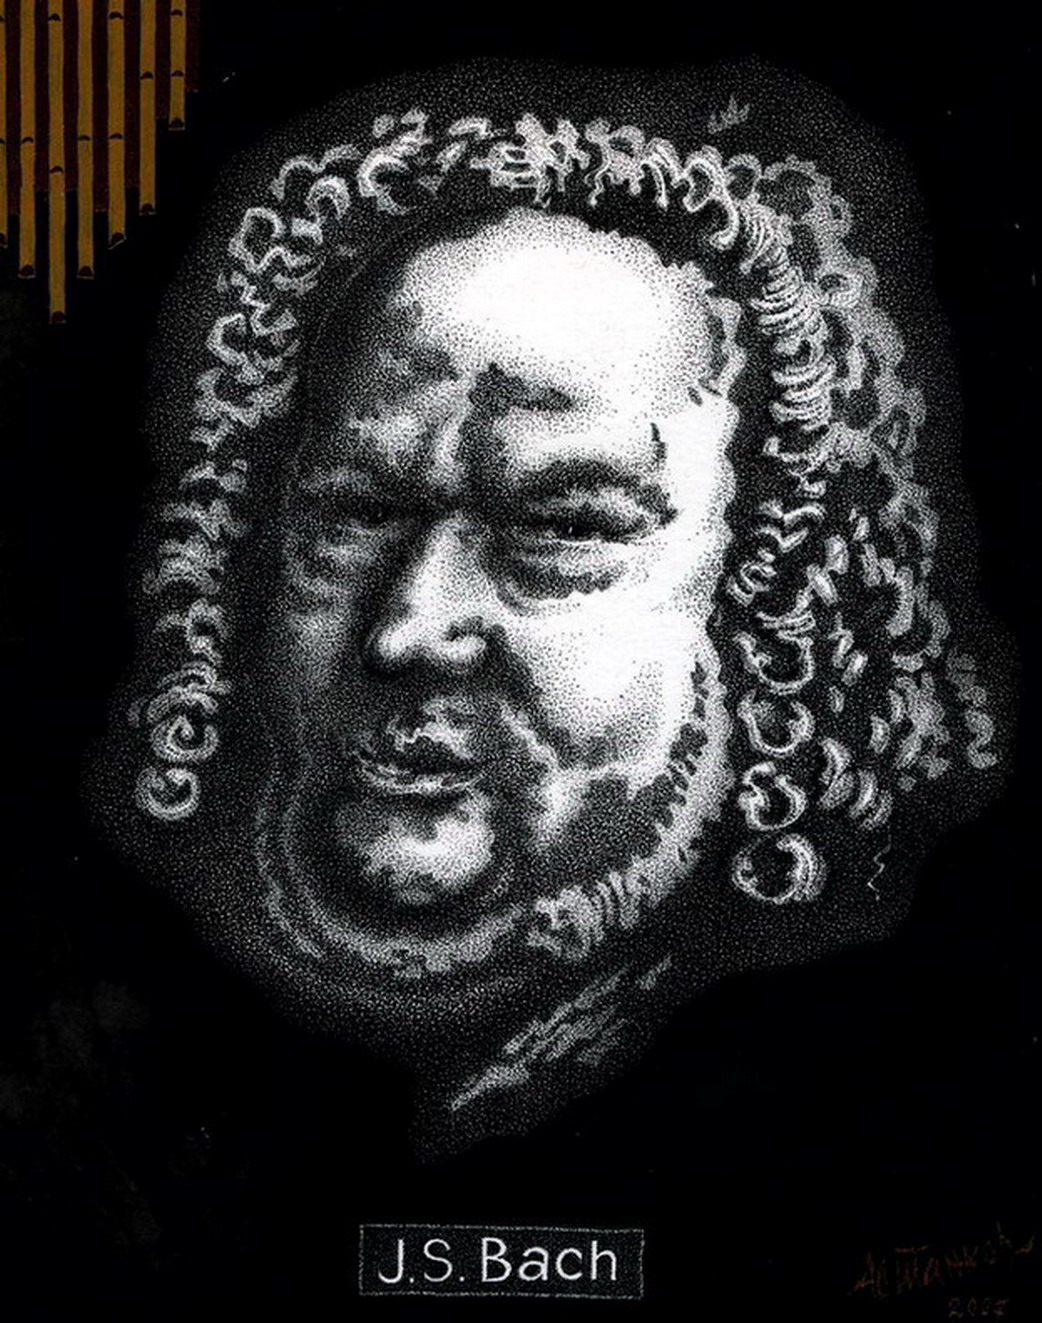 J.S. Bach - 1, Александр Астанков, Купить картину Смешанная техника